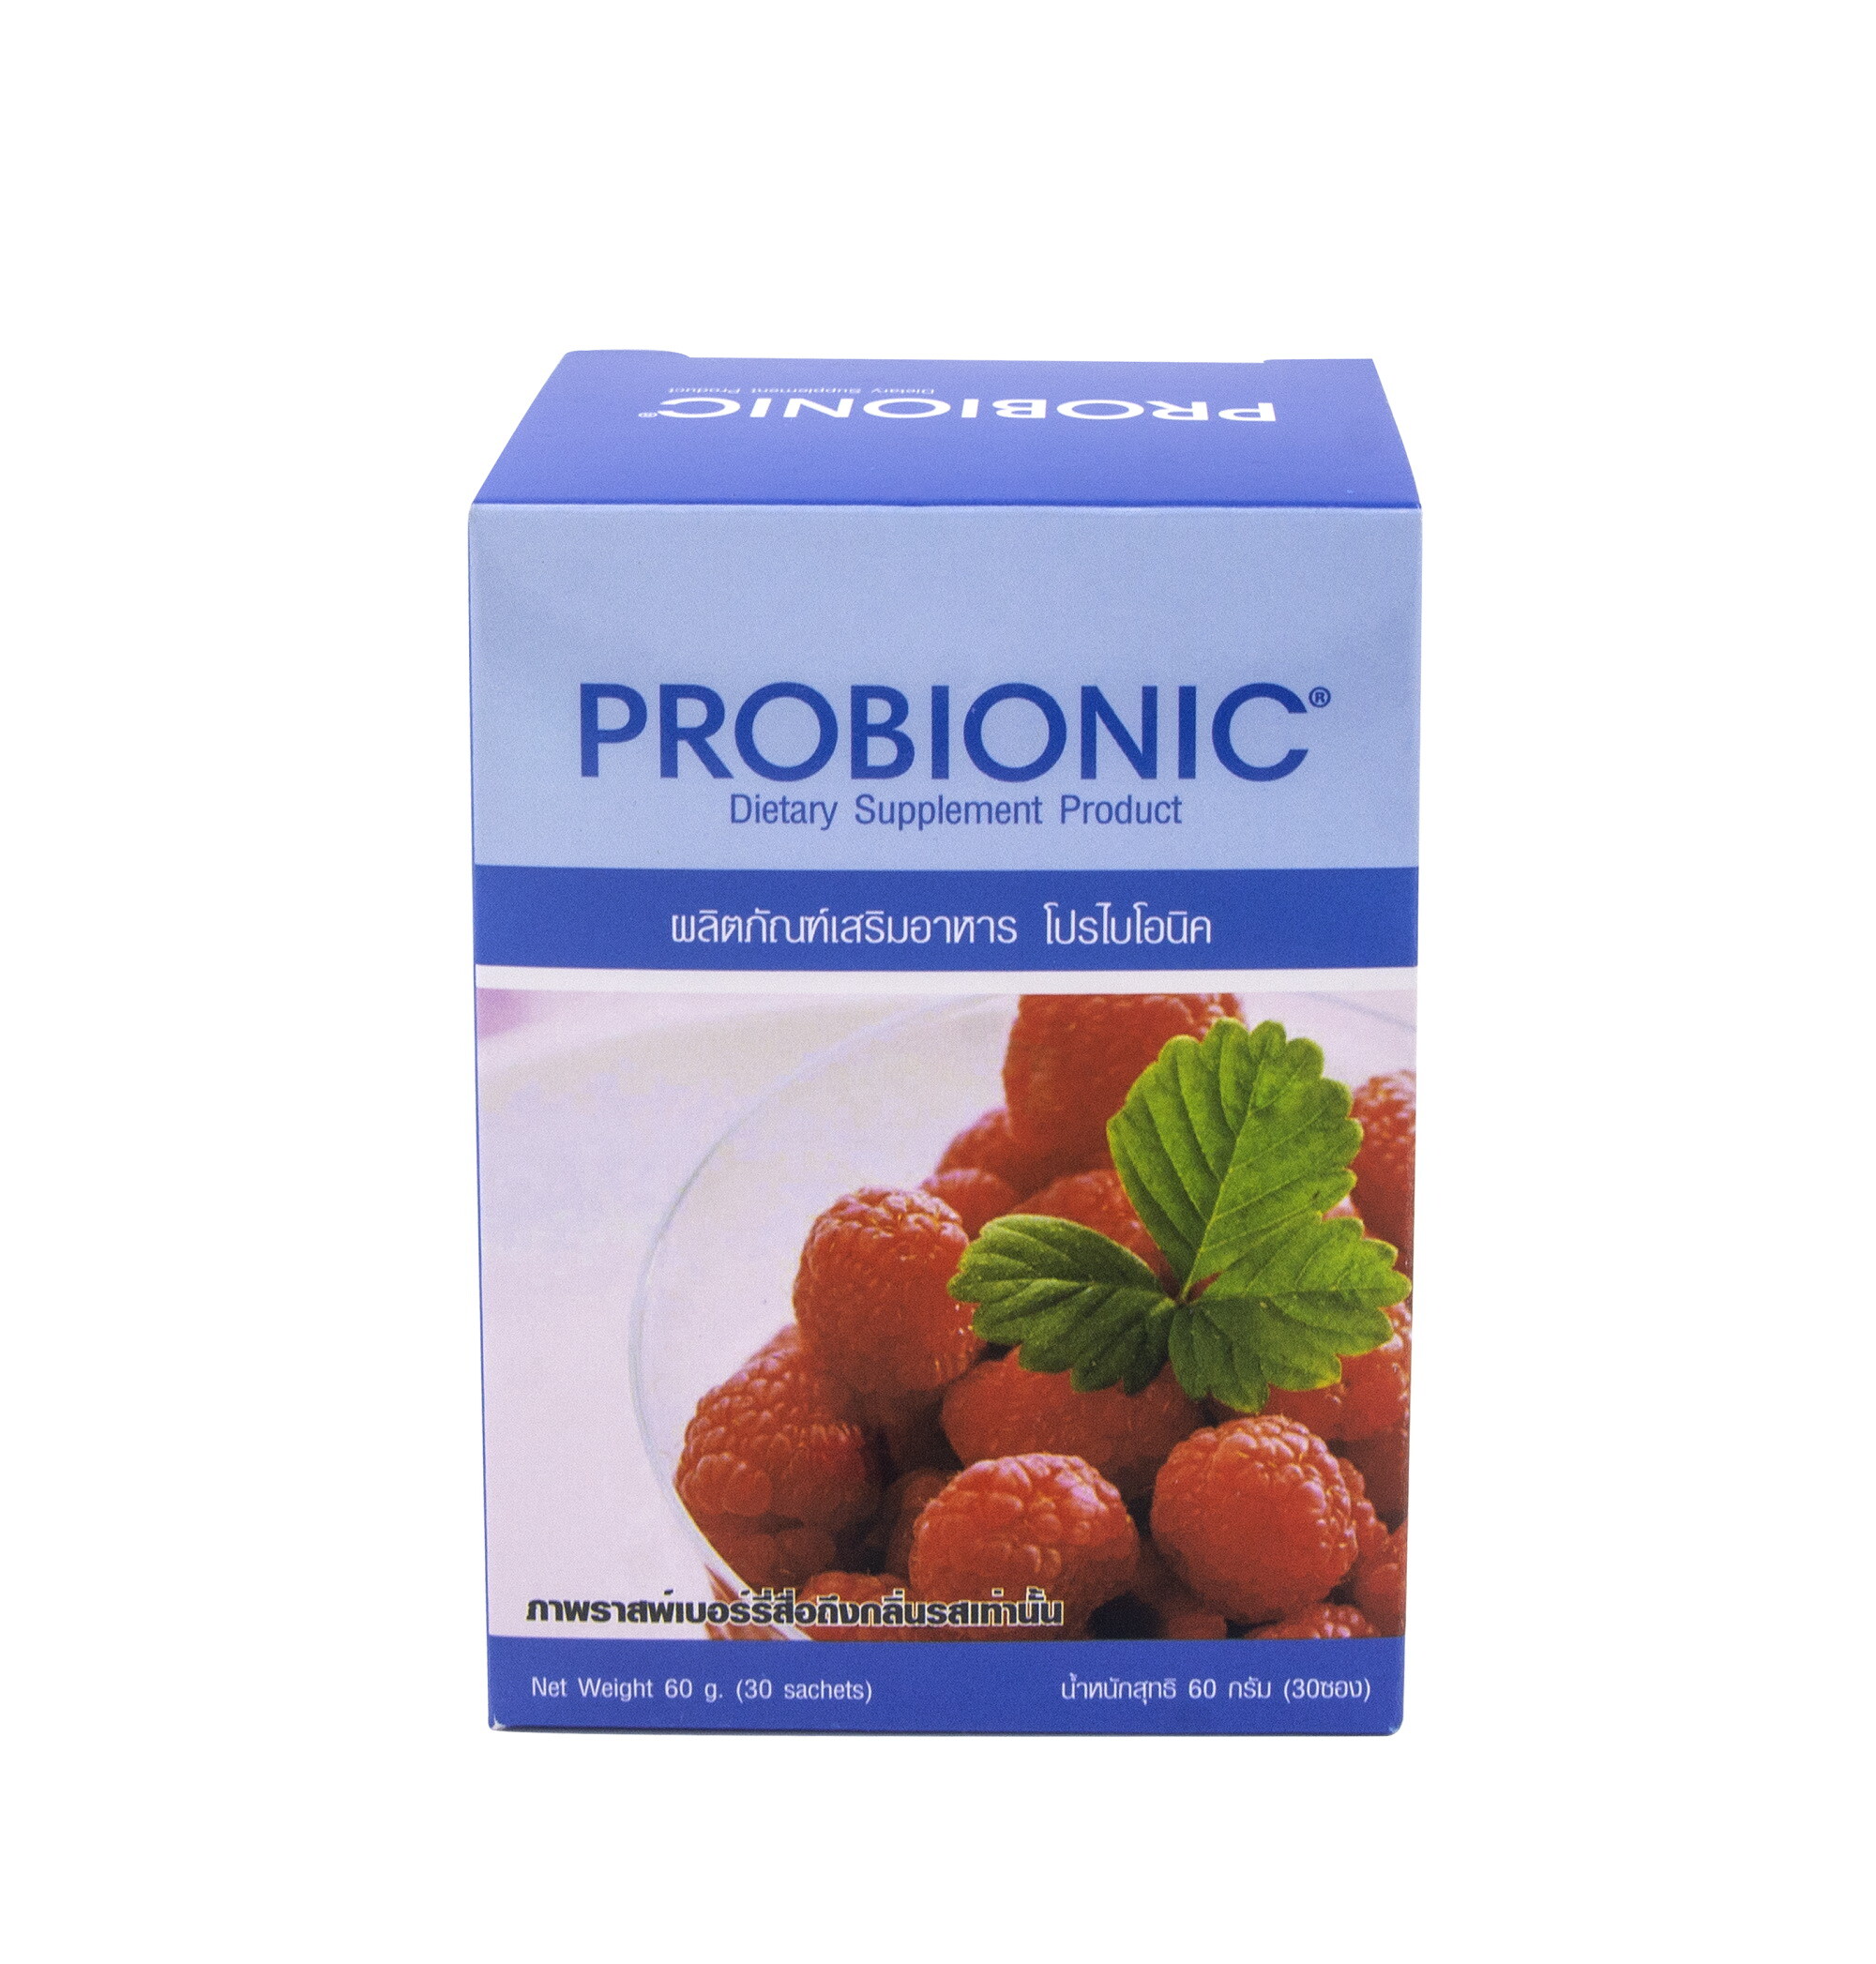 ผลิตภัณฑ์ 'โปรไบโอนิค (Probionic)’  เพื่อสร้างสมดุลให้ระบบทางเดินอาหาร